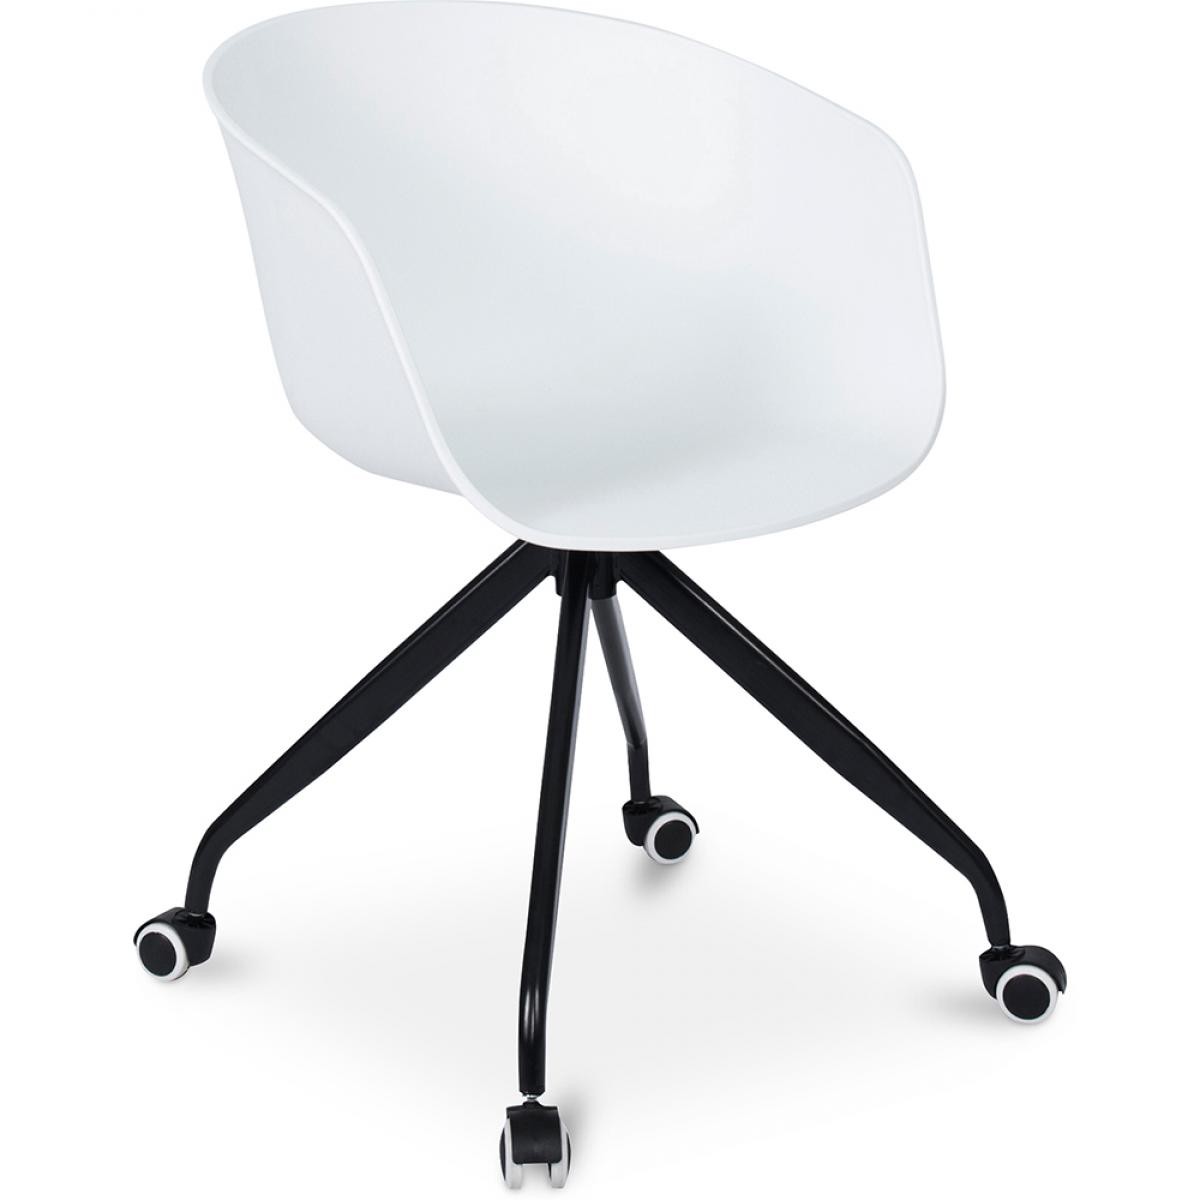 Privatefloor - Chaise de bureau design avec roues - Chaises